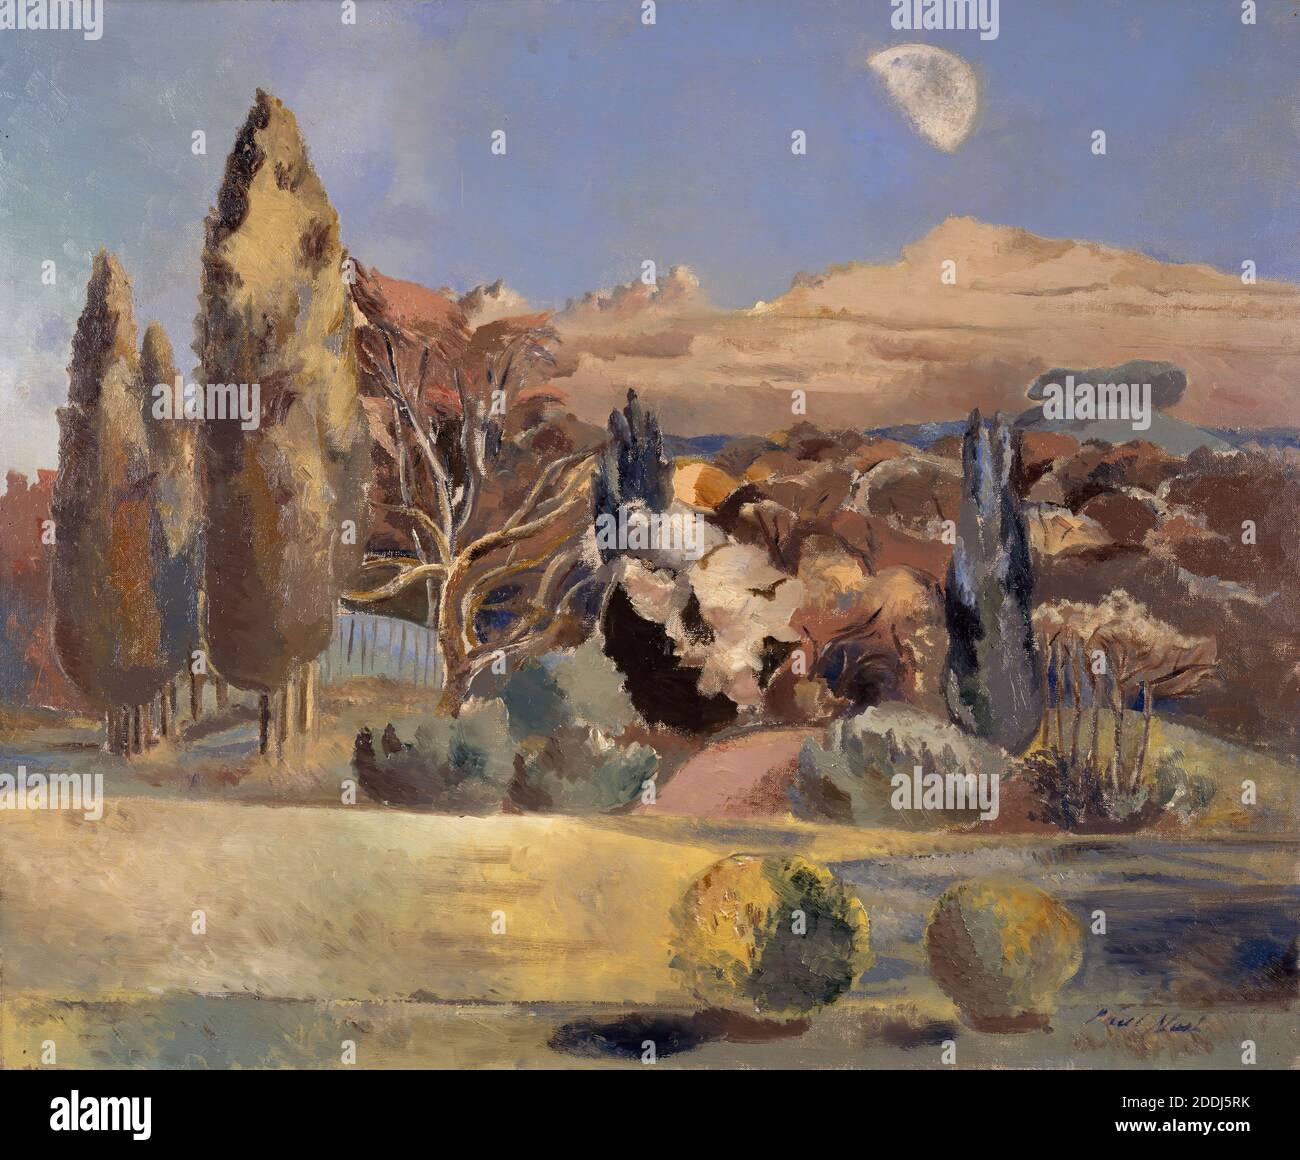 Paysage du premier trimestre de la Lune, 1943 Paul Nash (d. 1946), Art moderne, Art contemporain, Paysage, Résumé, peinture à l'huile, nuit, Astronomie, Lune Banque D'Images